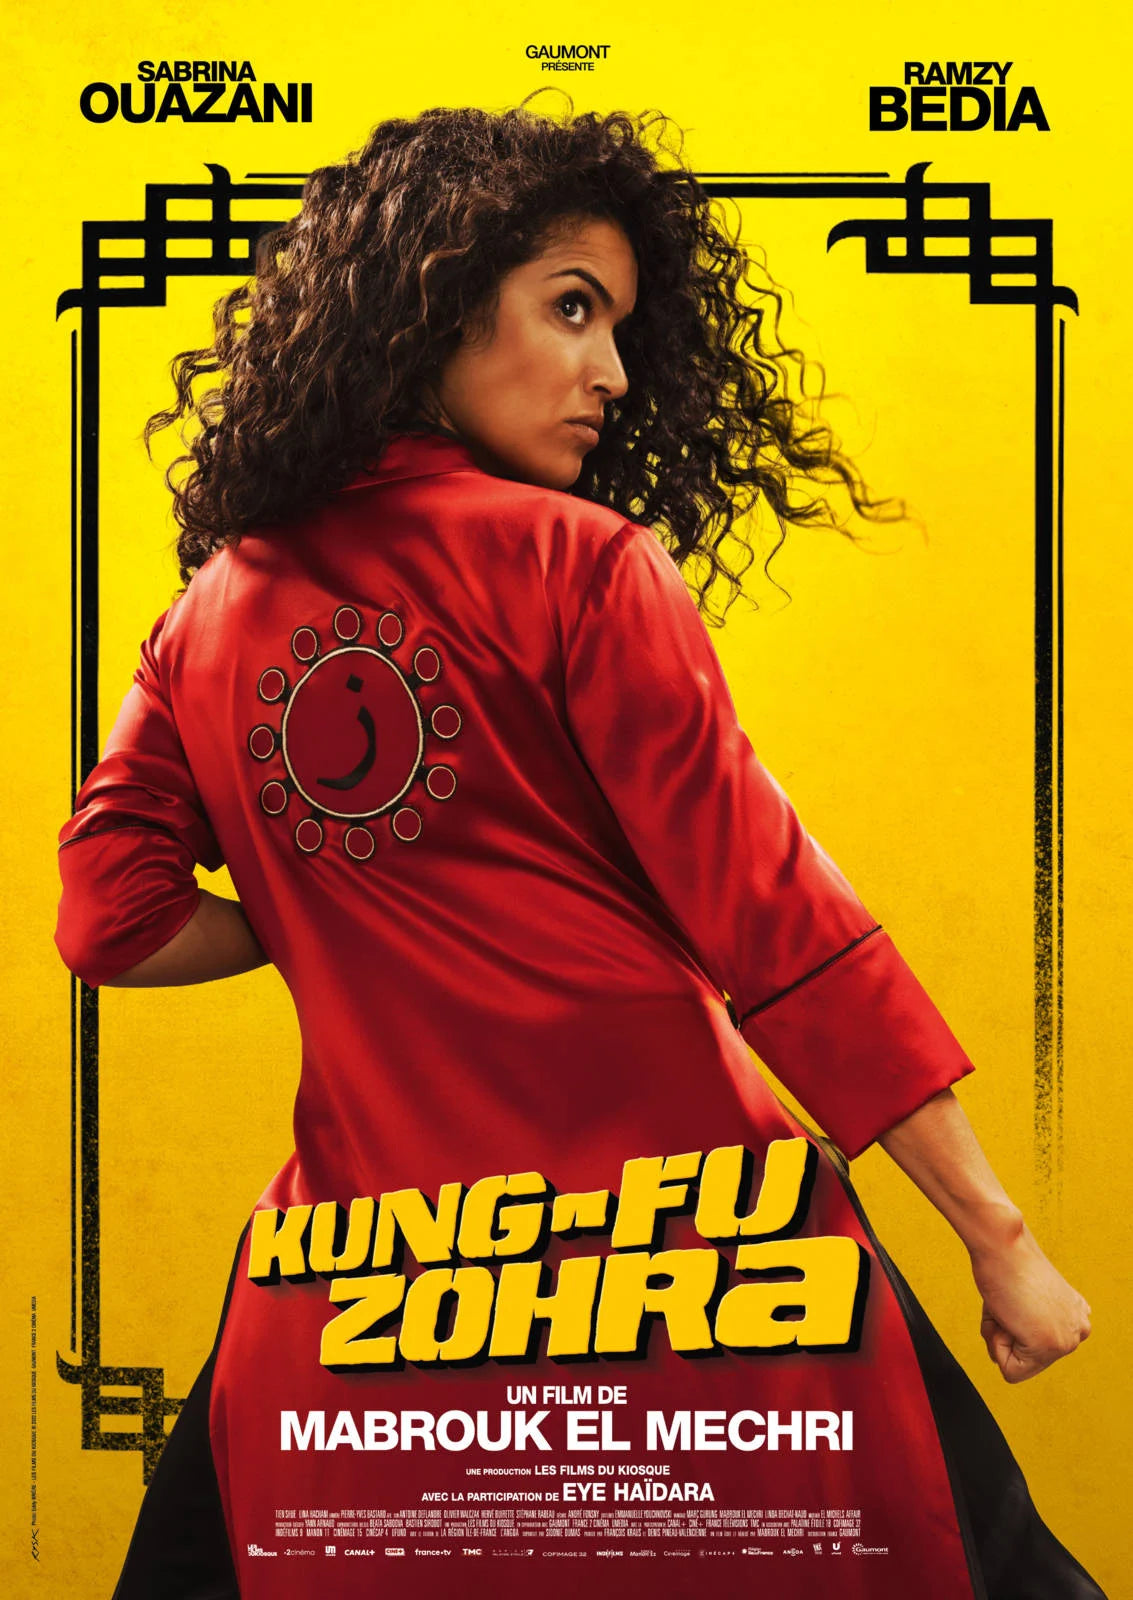 KUNG-FU ZOHRA [DVD à la location]